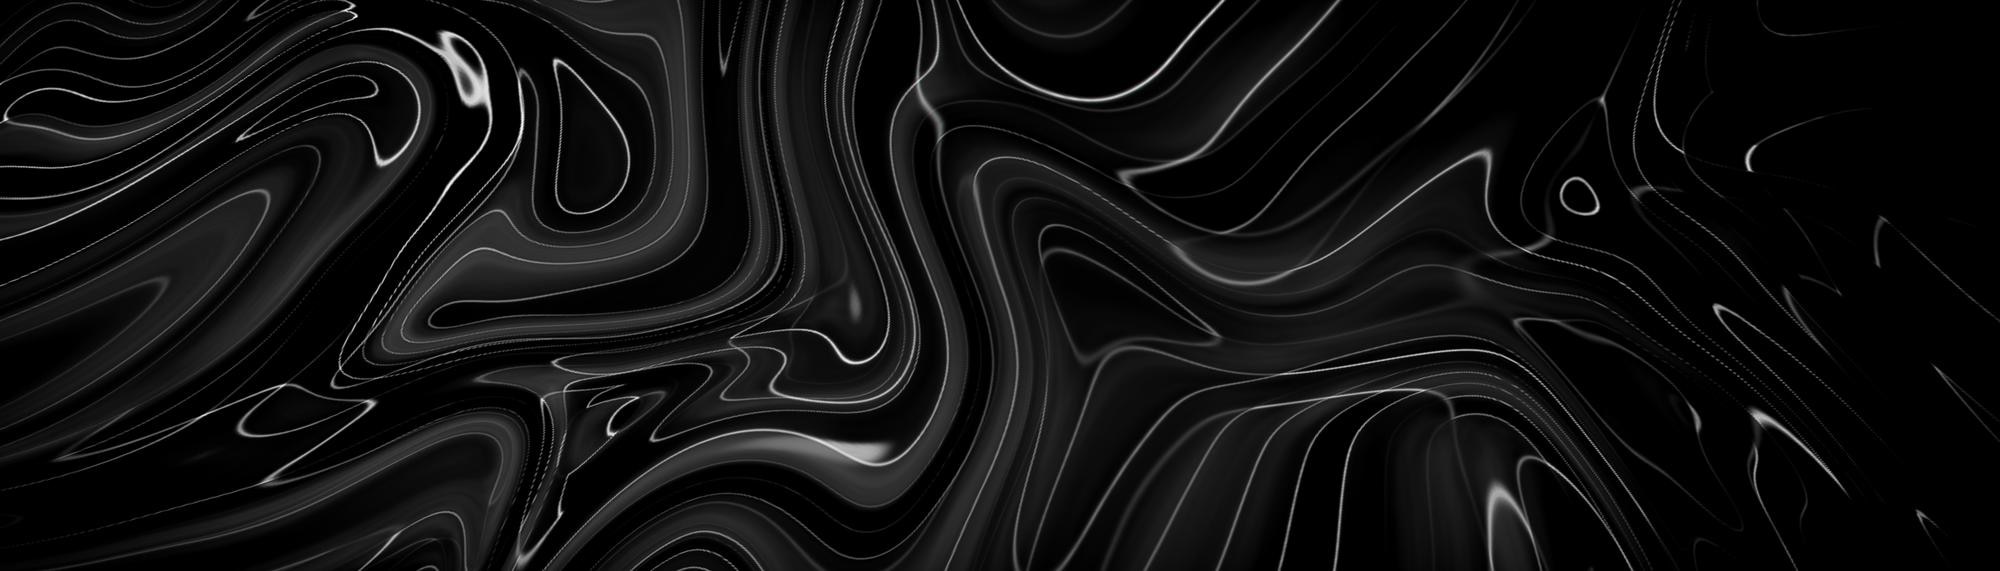 Black Liquid Image